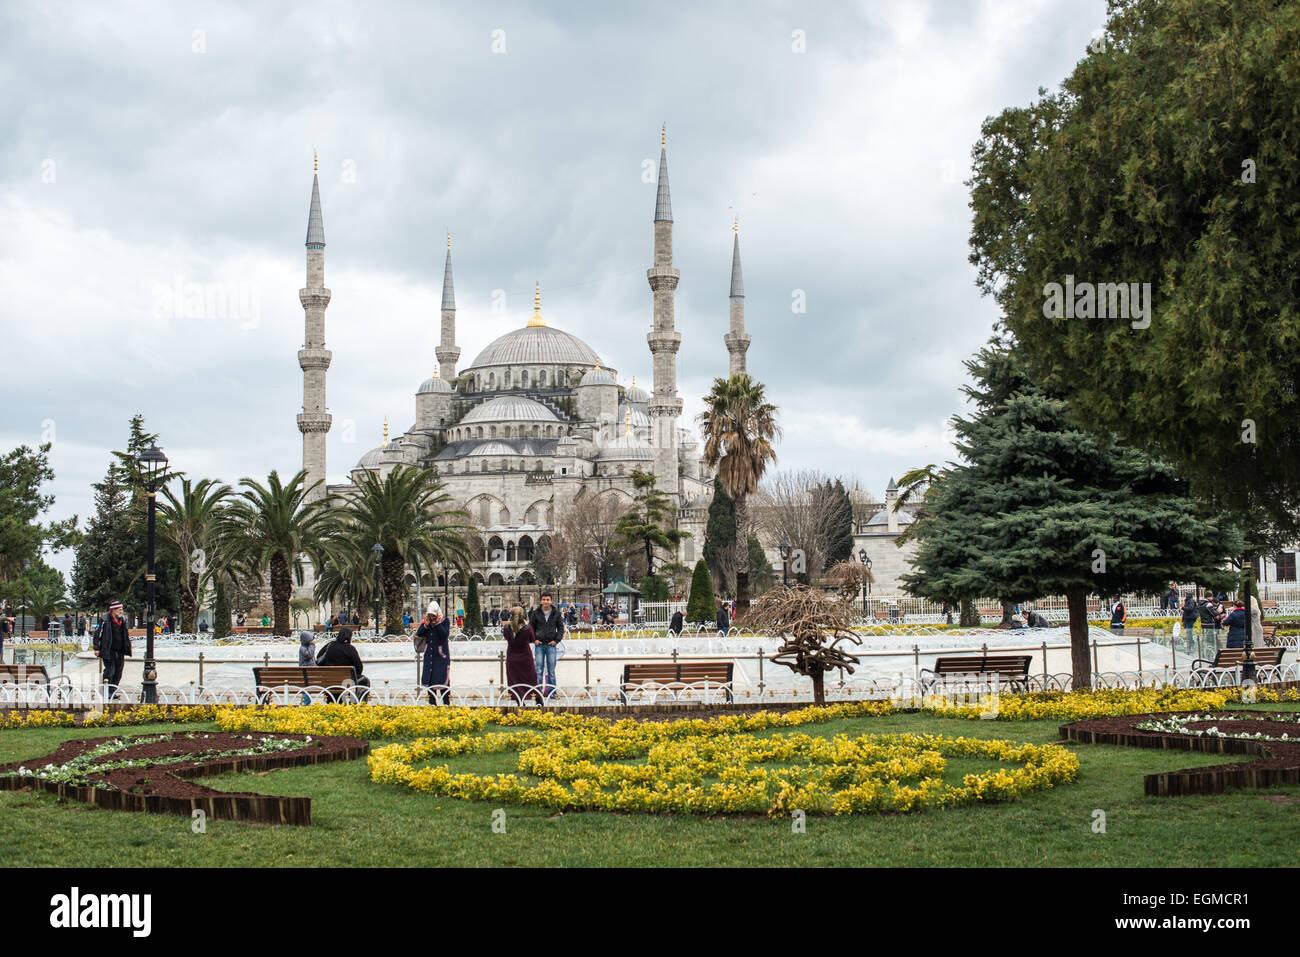 ISTANBUL, Turquie - touristes sur la place entre la Mosquée bleue et Sainte-Sophie dans le quartier Sultanahmet d'Istanbul. Bien qu'elle soit largement connue sous le nom de Mosquée bleue pour son carrelage intérieur, le nom officiel de la mosquée est Sultan Ahmed Mosquée (ou Sultan Ahmet Camii en turc). Il a été construit de 1609 à 1616 sous le règne du Sultan Ahmed I. En juillet 2020, le président turc Recep Tayyip Erdogan décrète que Sainte-Sophie serait reconvertie en mosquée. Banque D'Images